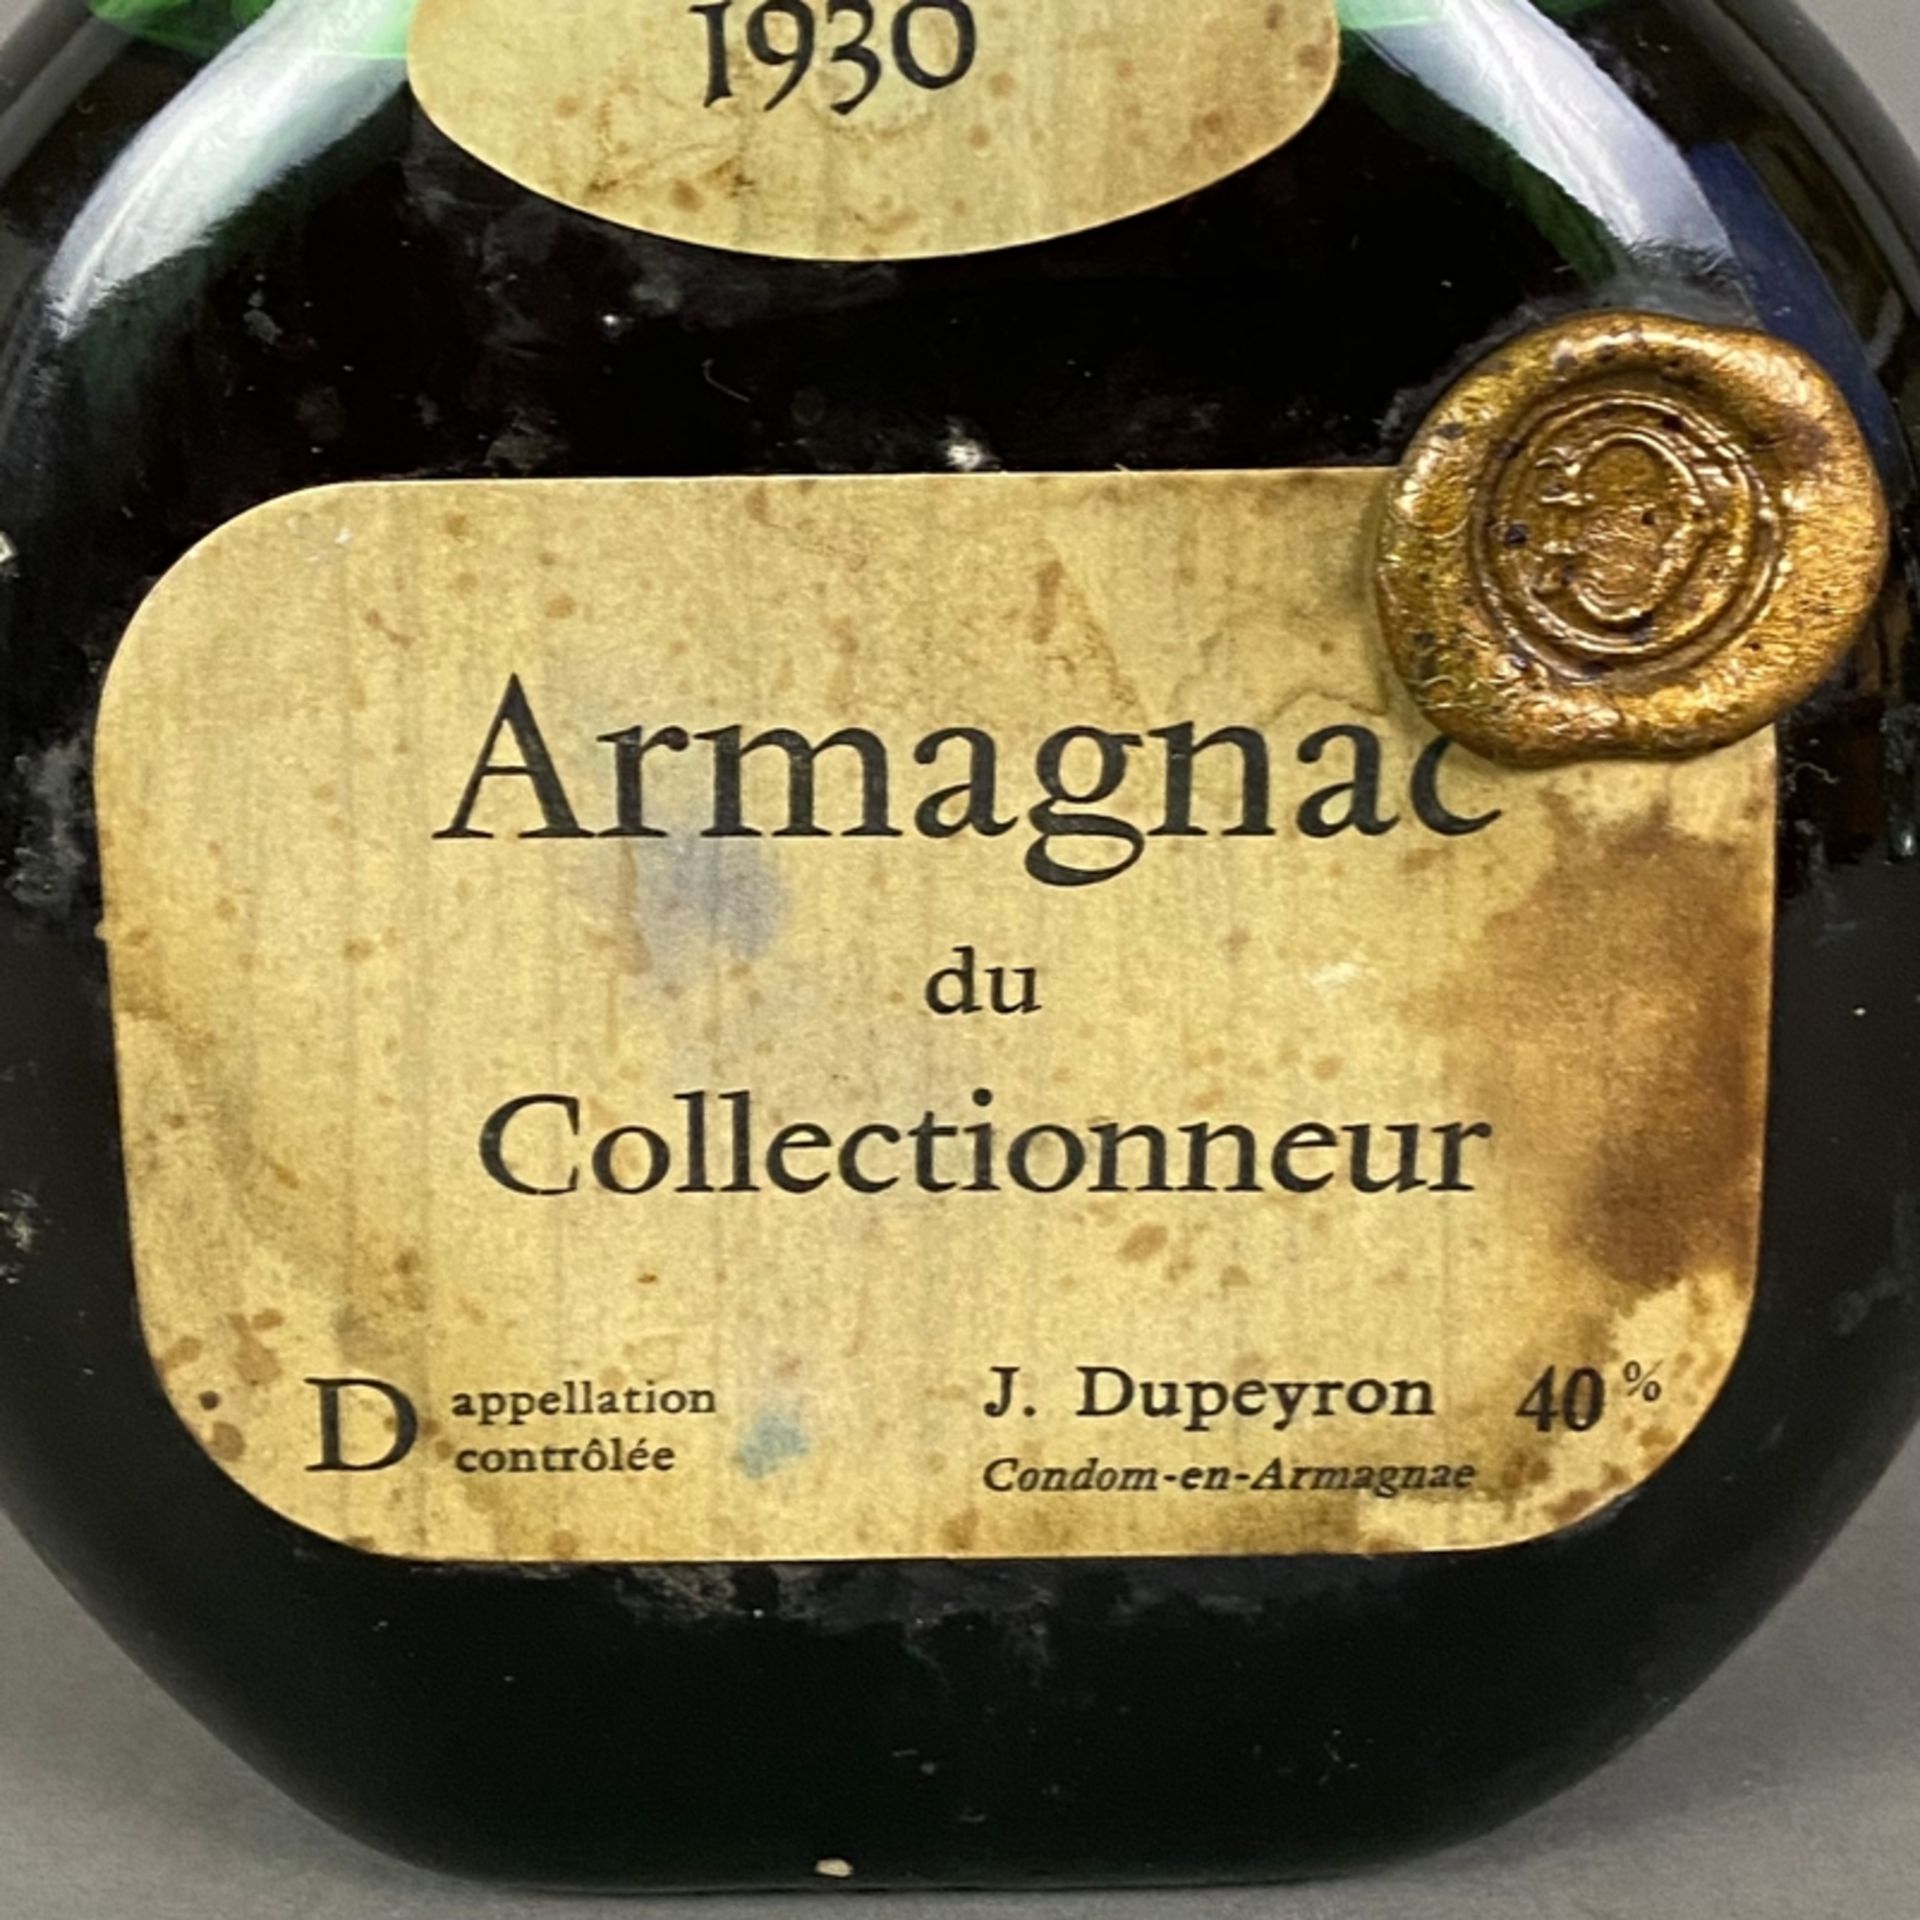 Armagnac - Armagnac du Collectionneur, J. Dupeyron, 1930, 70 cl, 40%, Füllstand: Low Shoulder, Etik - Image 2 of 5